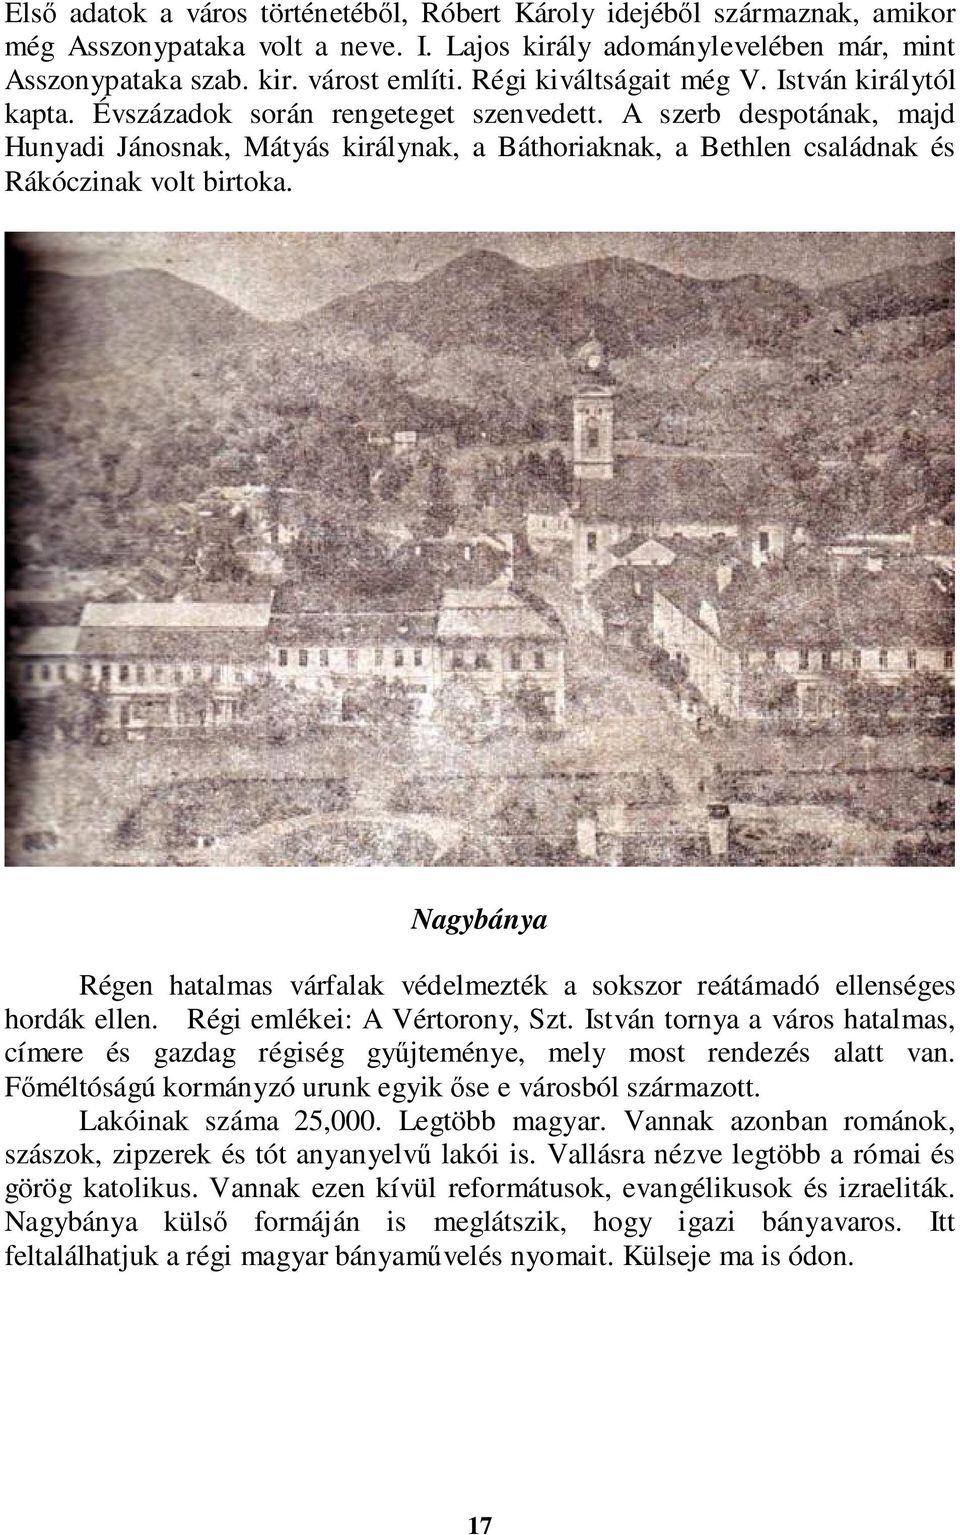 A szerb despotának, majd Hunyadi Jánosnak, Mátyás királynak, a Báthoriaknak, a Bethlen családnak és Rákóczinak volt birtoka.